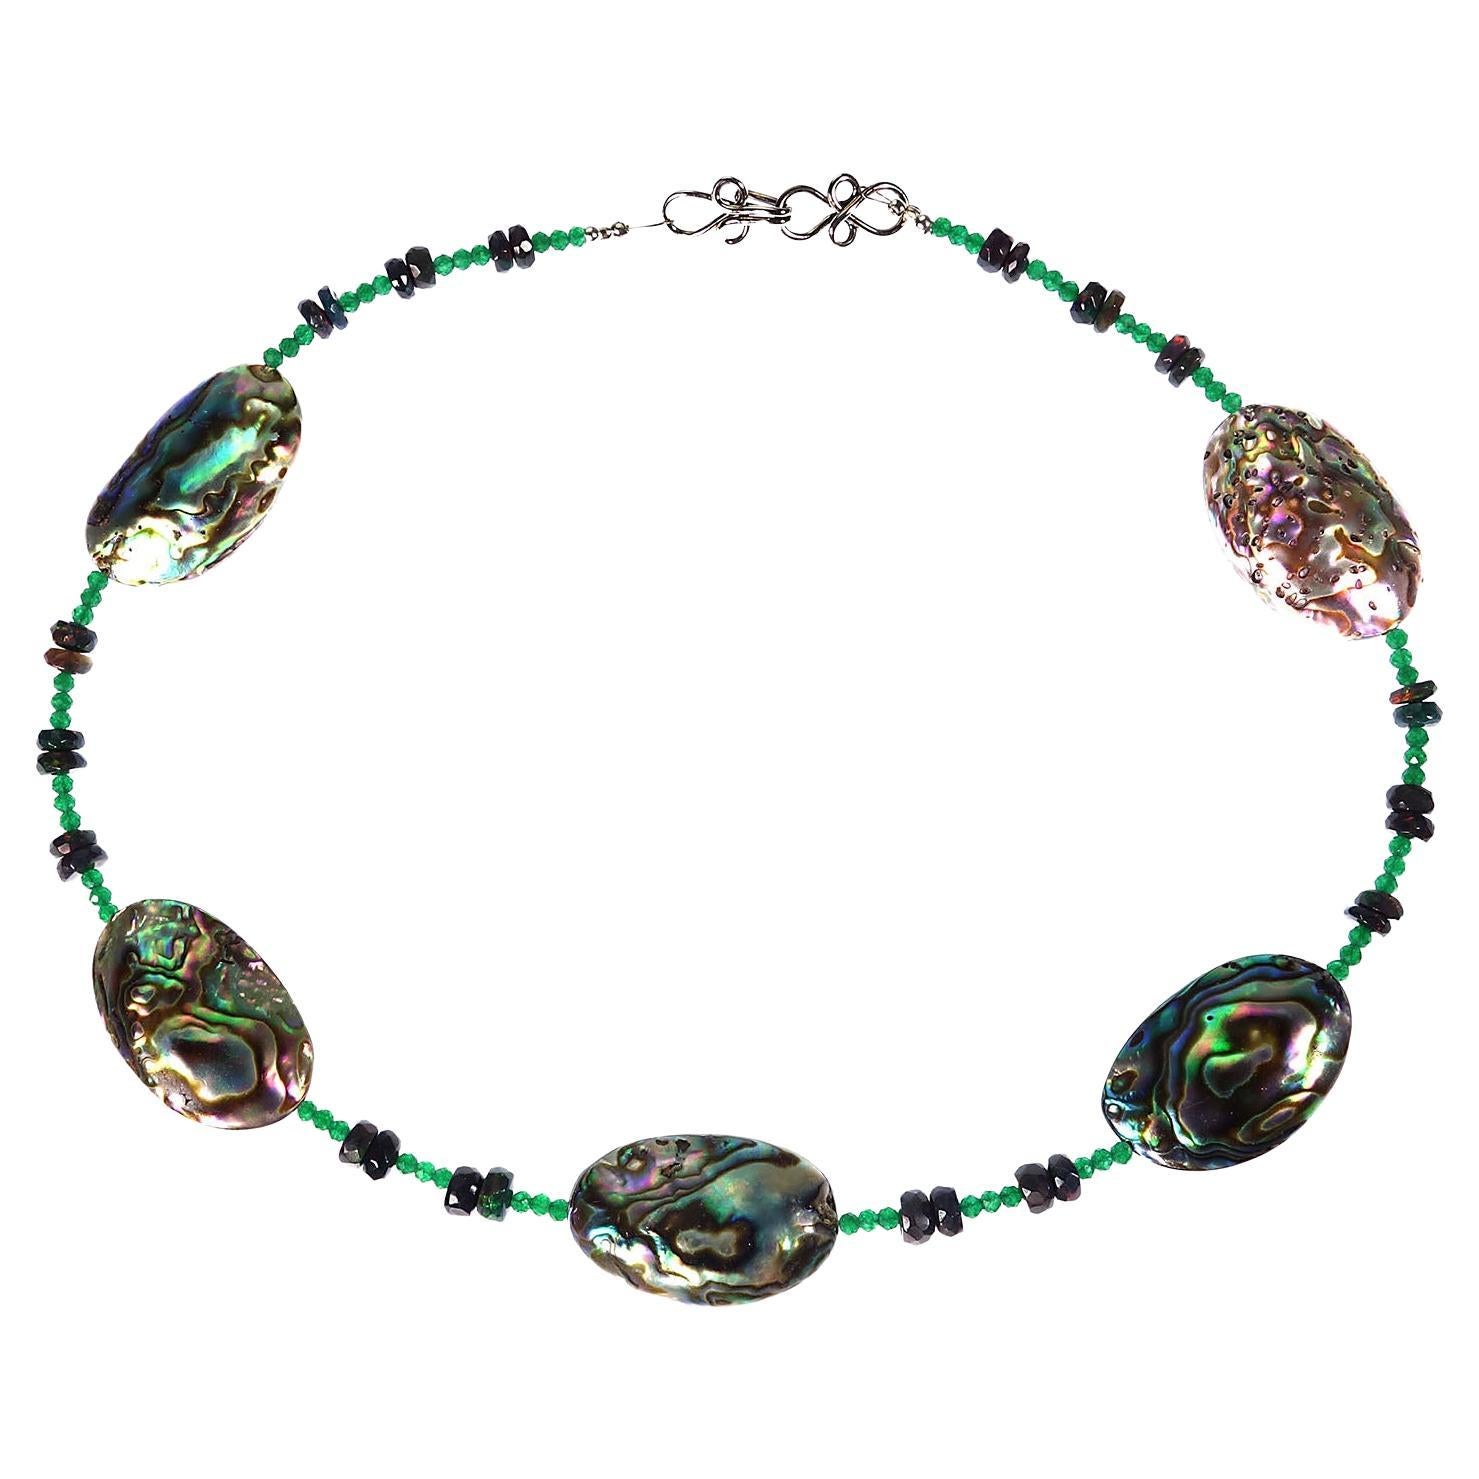 Einzigartige Halskette in Chokerlänge, die perfekt für Frühling und Sommer ist.  Dieses zarte Collier besteht aus fünf Stationen aus Paua-Muscheln, 27x18 MM, die sich mit Rondellen aus schwarzem Opal und grünem Quarz abwechseln.  Der Black Opal